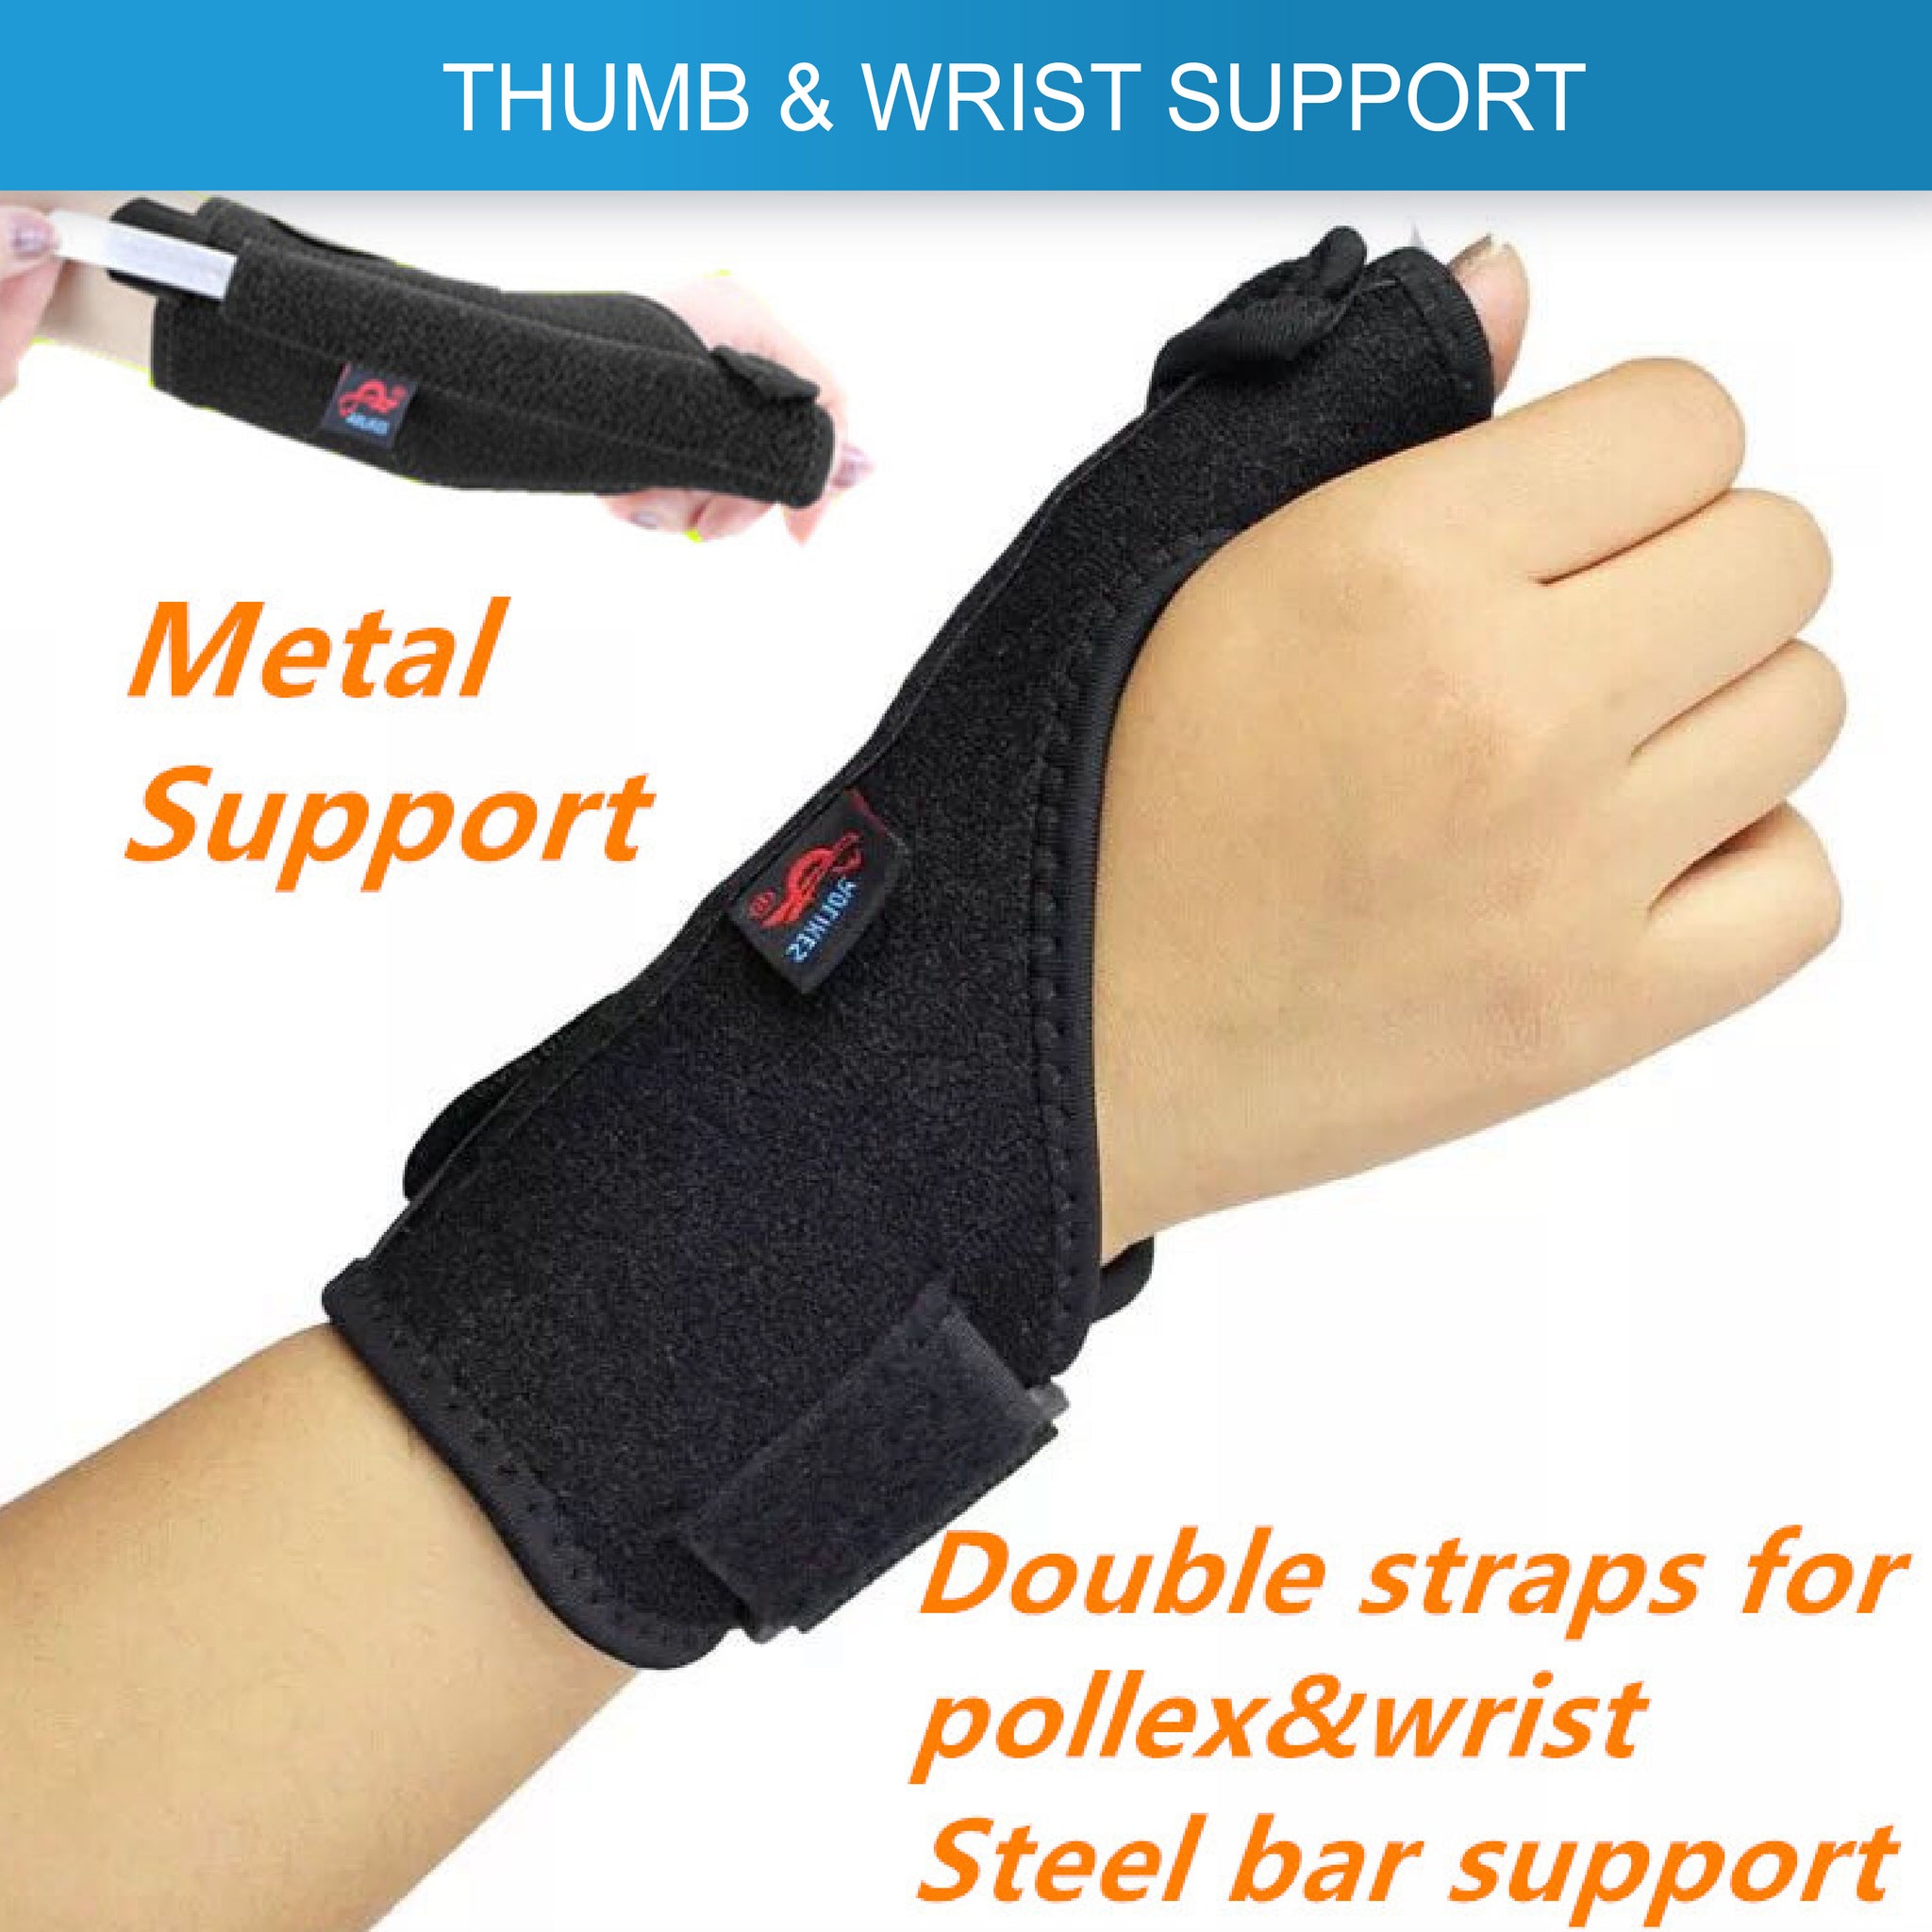 Thumb Spica Splint & Wrist Brace Both A Wrist Splint And Thumb